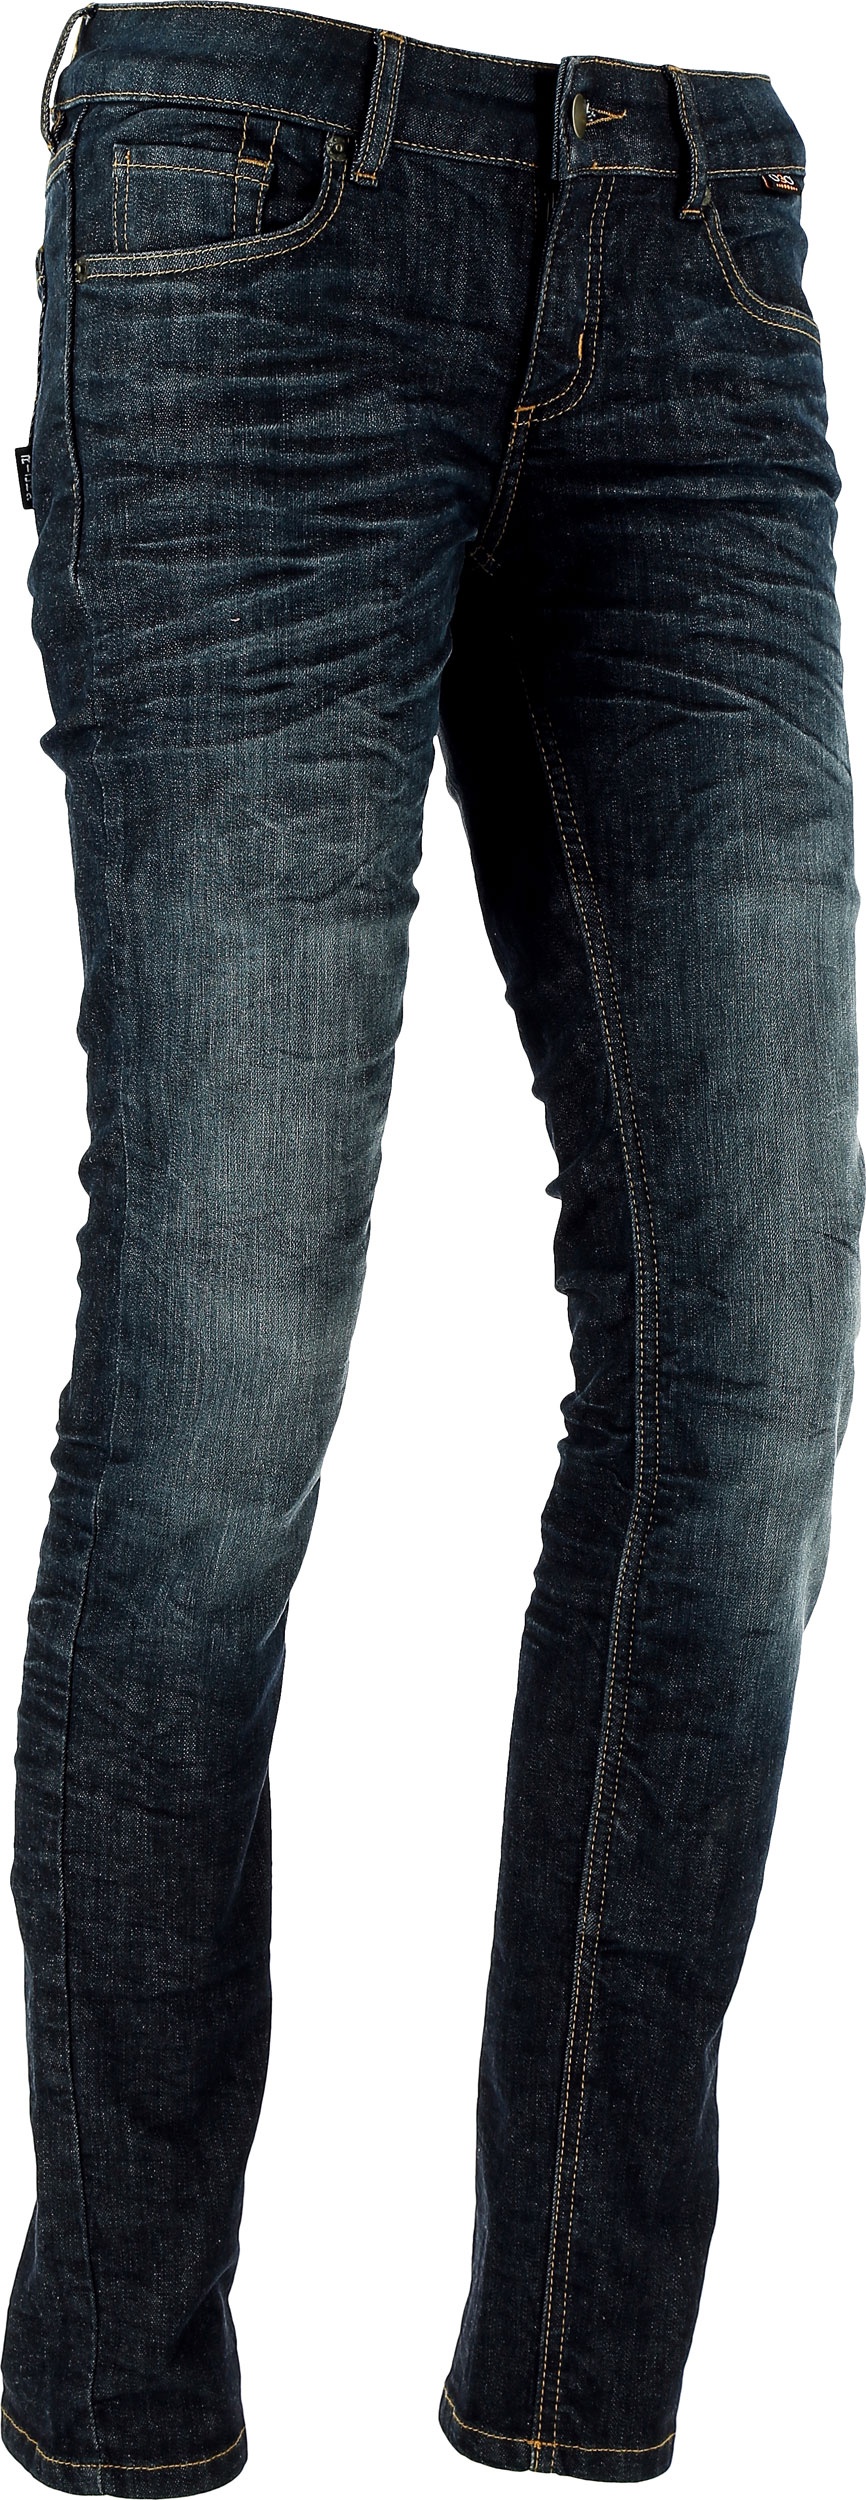 Richa Skinny, femmes jeans - Noir - 26